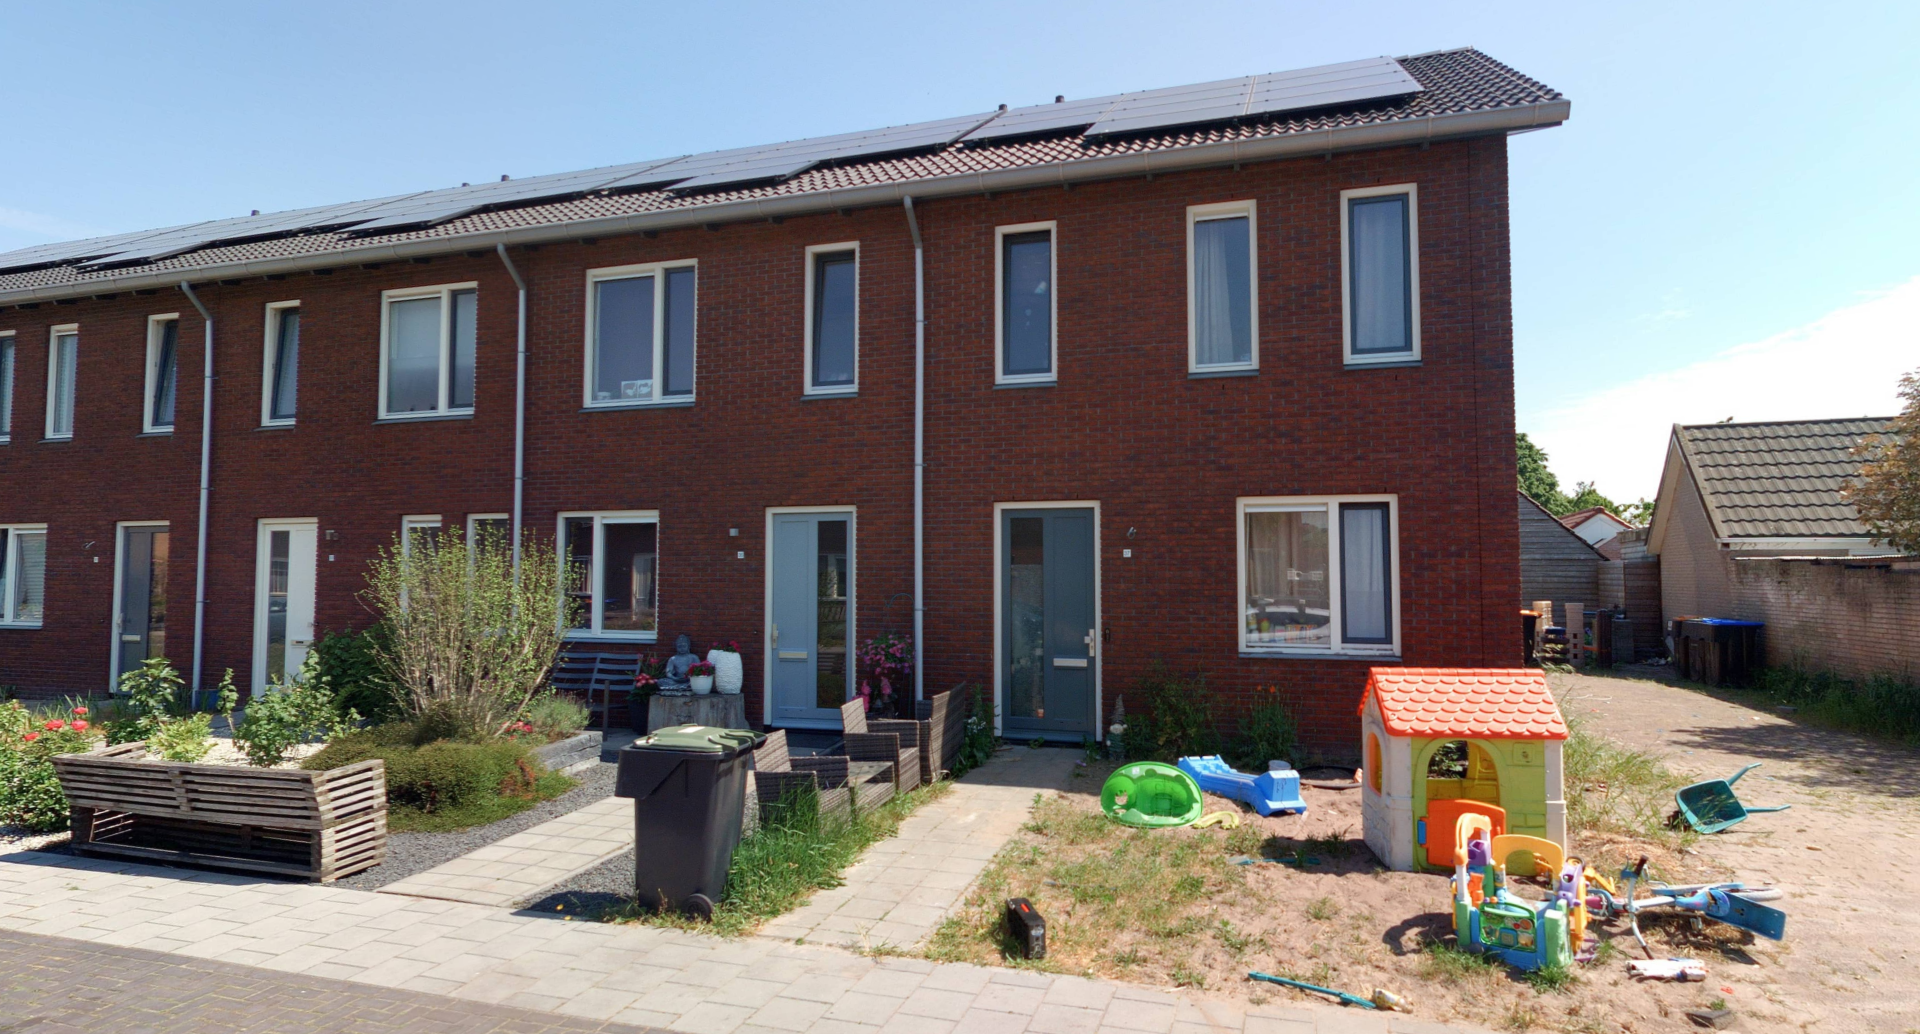 Julianastraat 37, 7948 AN Nijeveen, Nederland